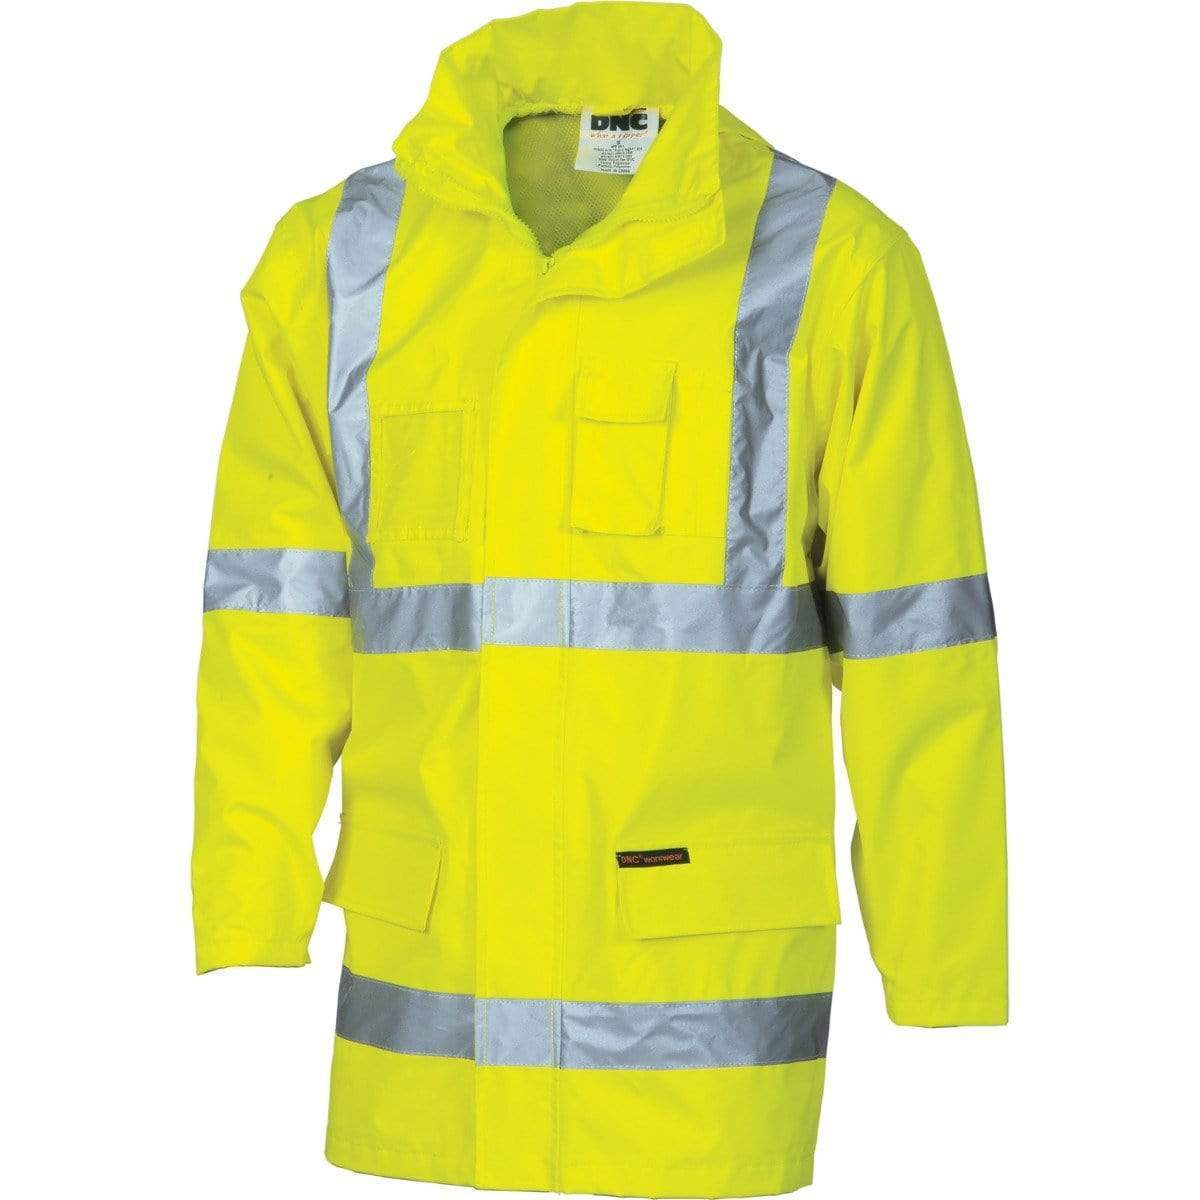 Dnc Workwear Hi-vis Cross-back D/n 2-in-1 Rain Jacket - 3995 Work Wear DNC Workwear Yellow XS 